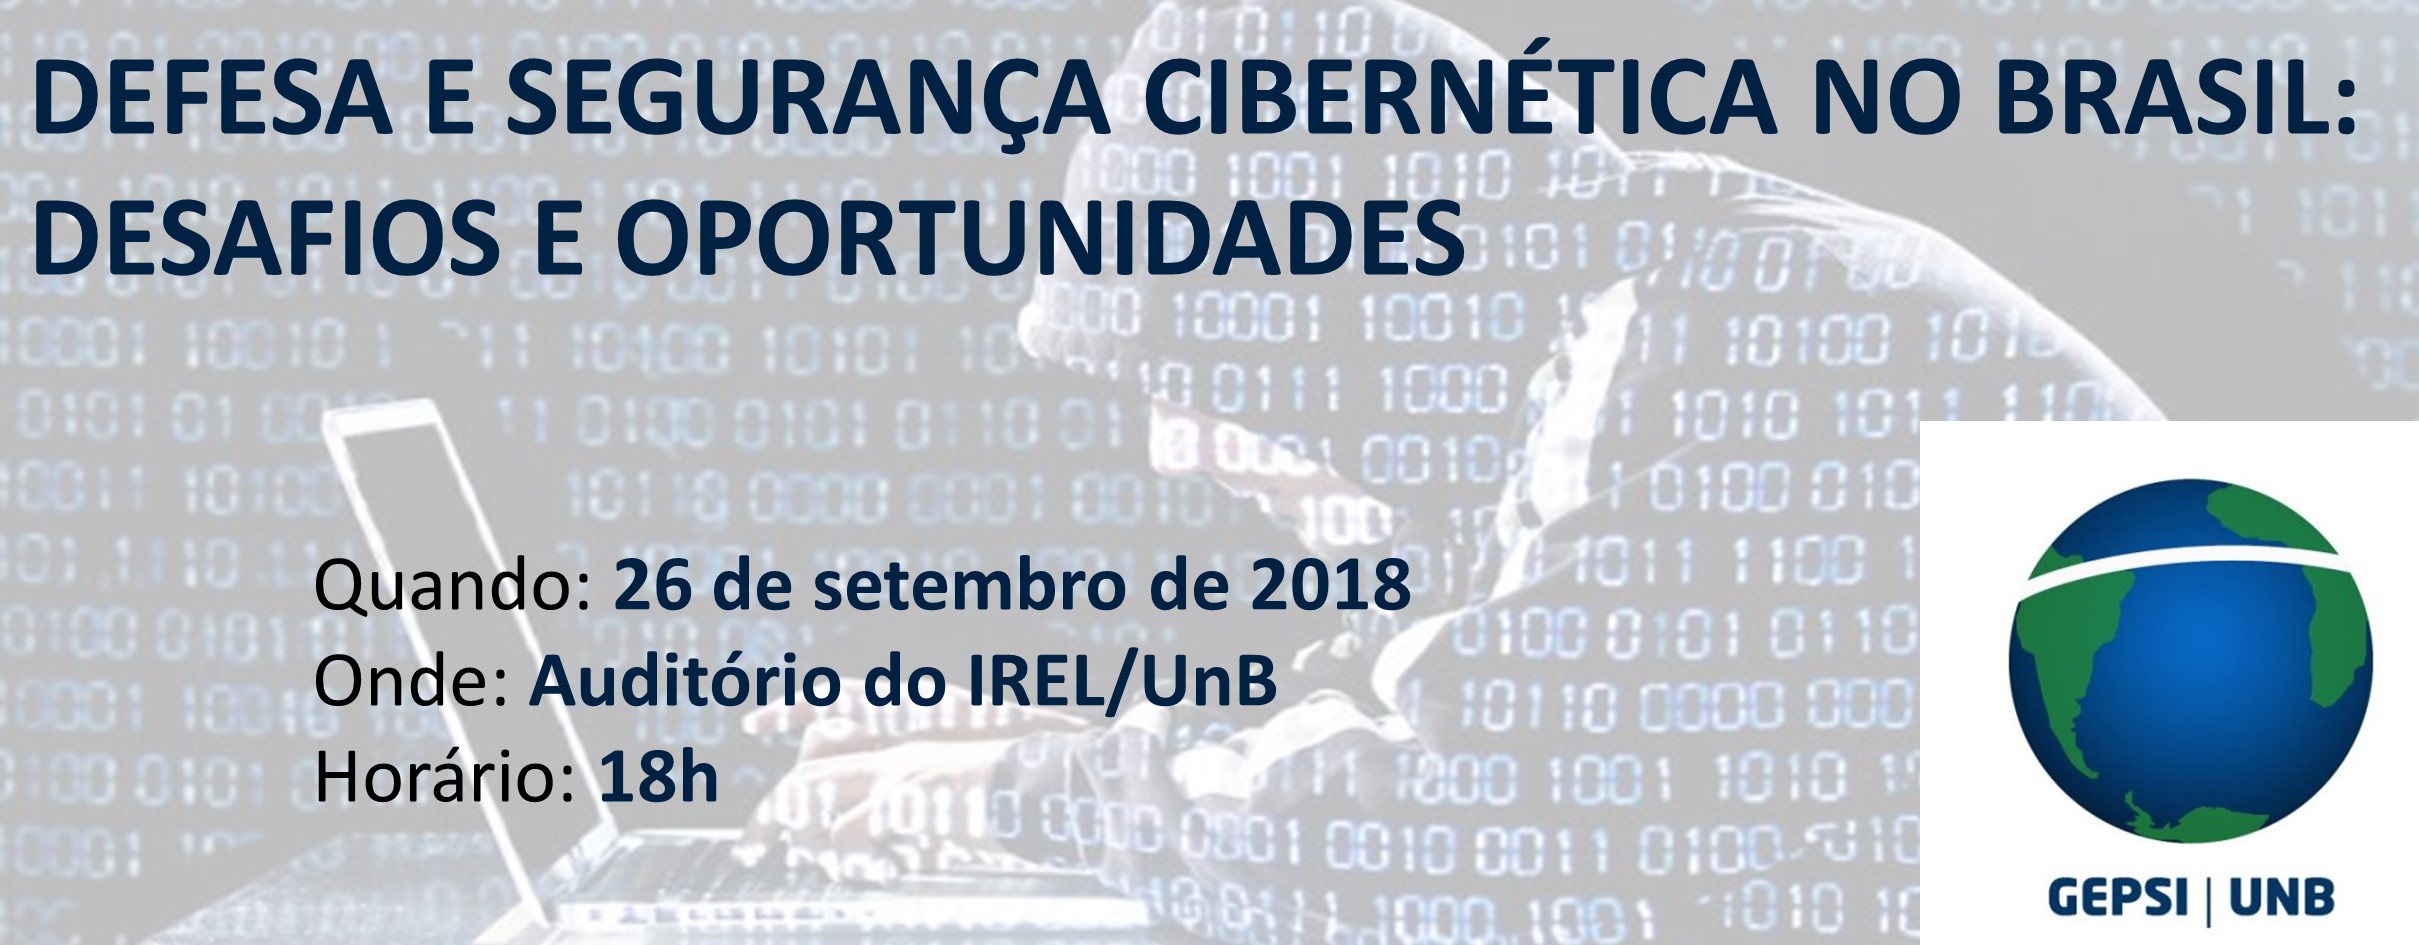 Segurança e Defesa Cibernética no Brasil: Desafios e Oportunidades